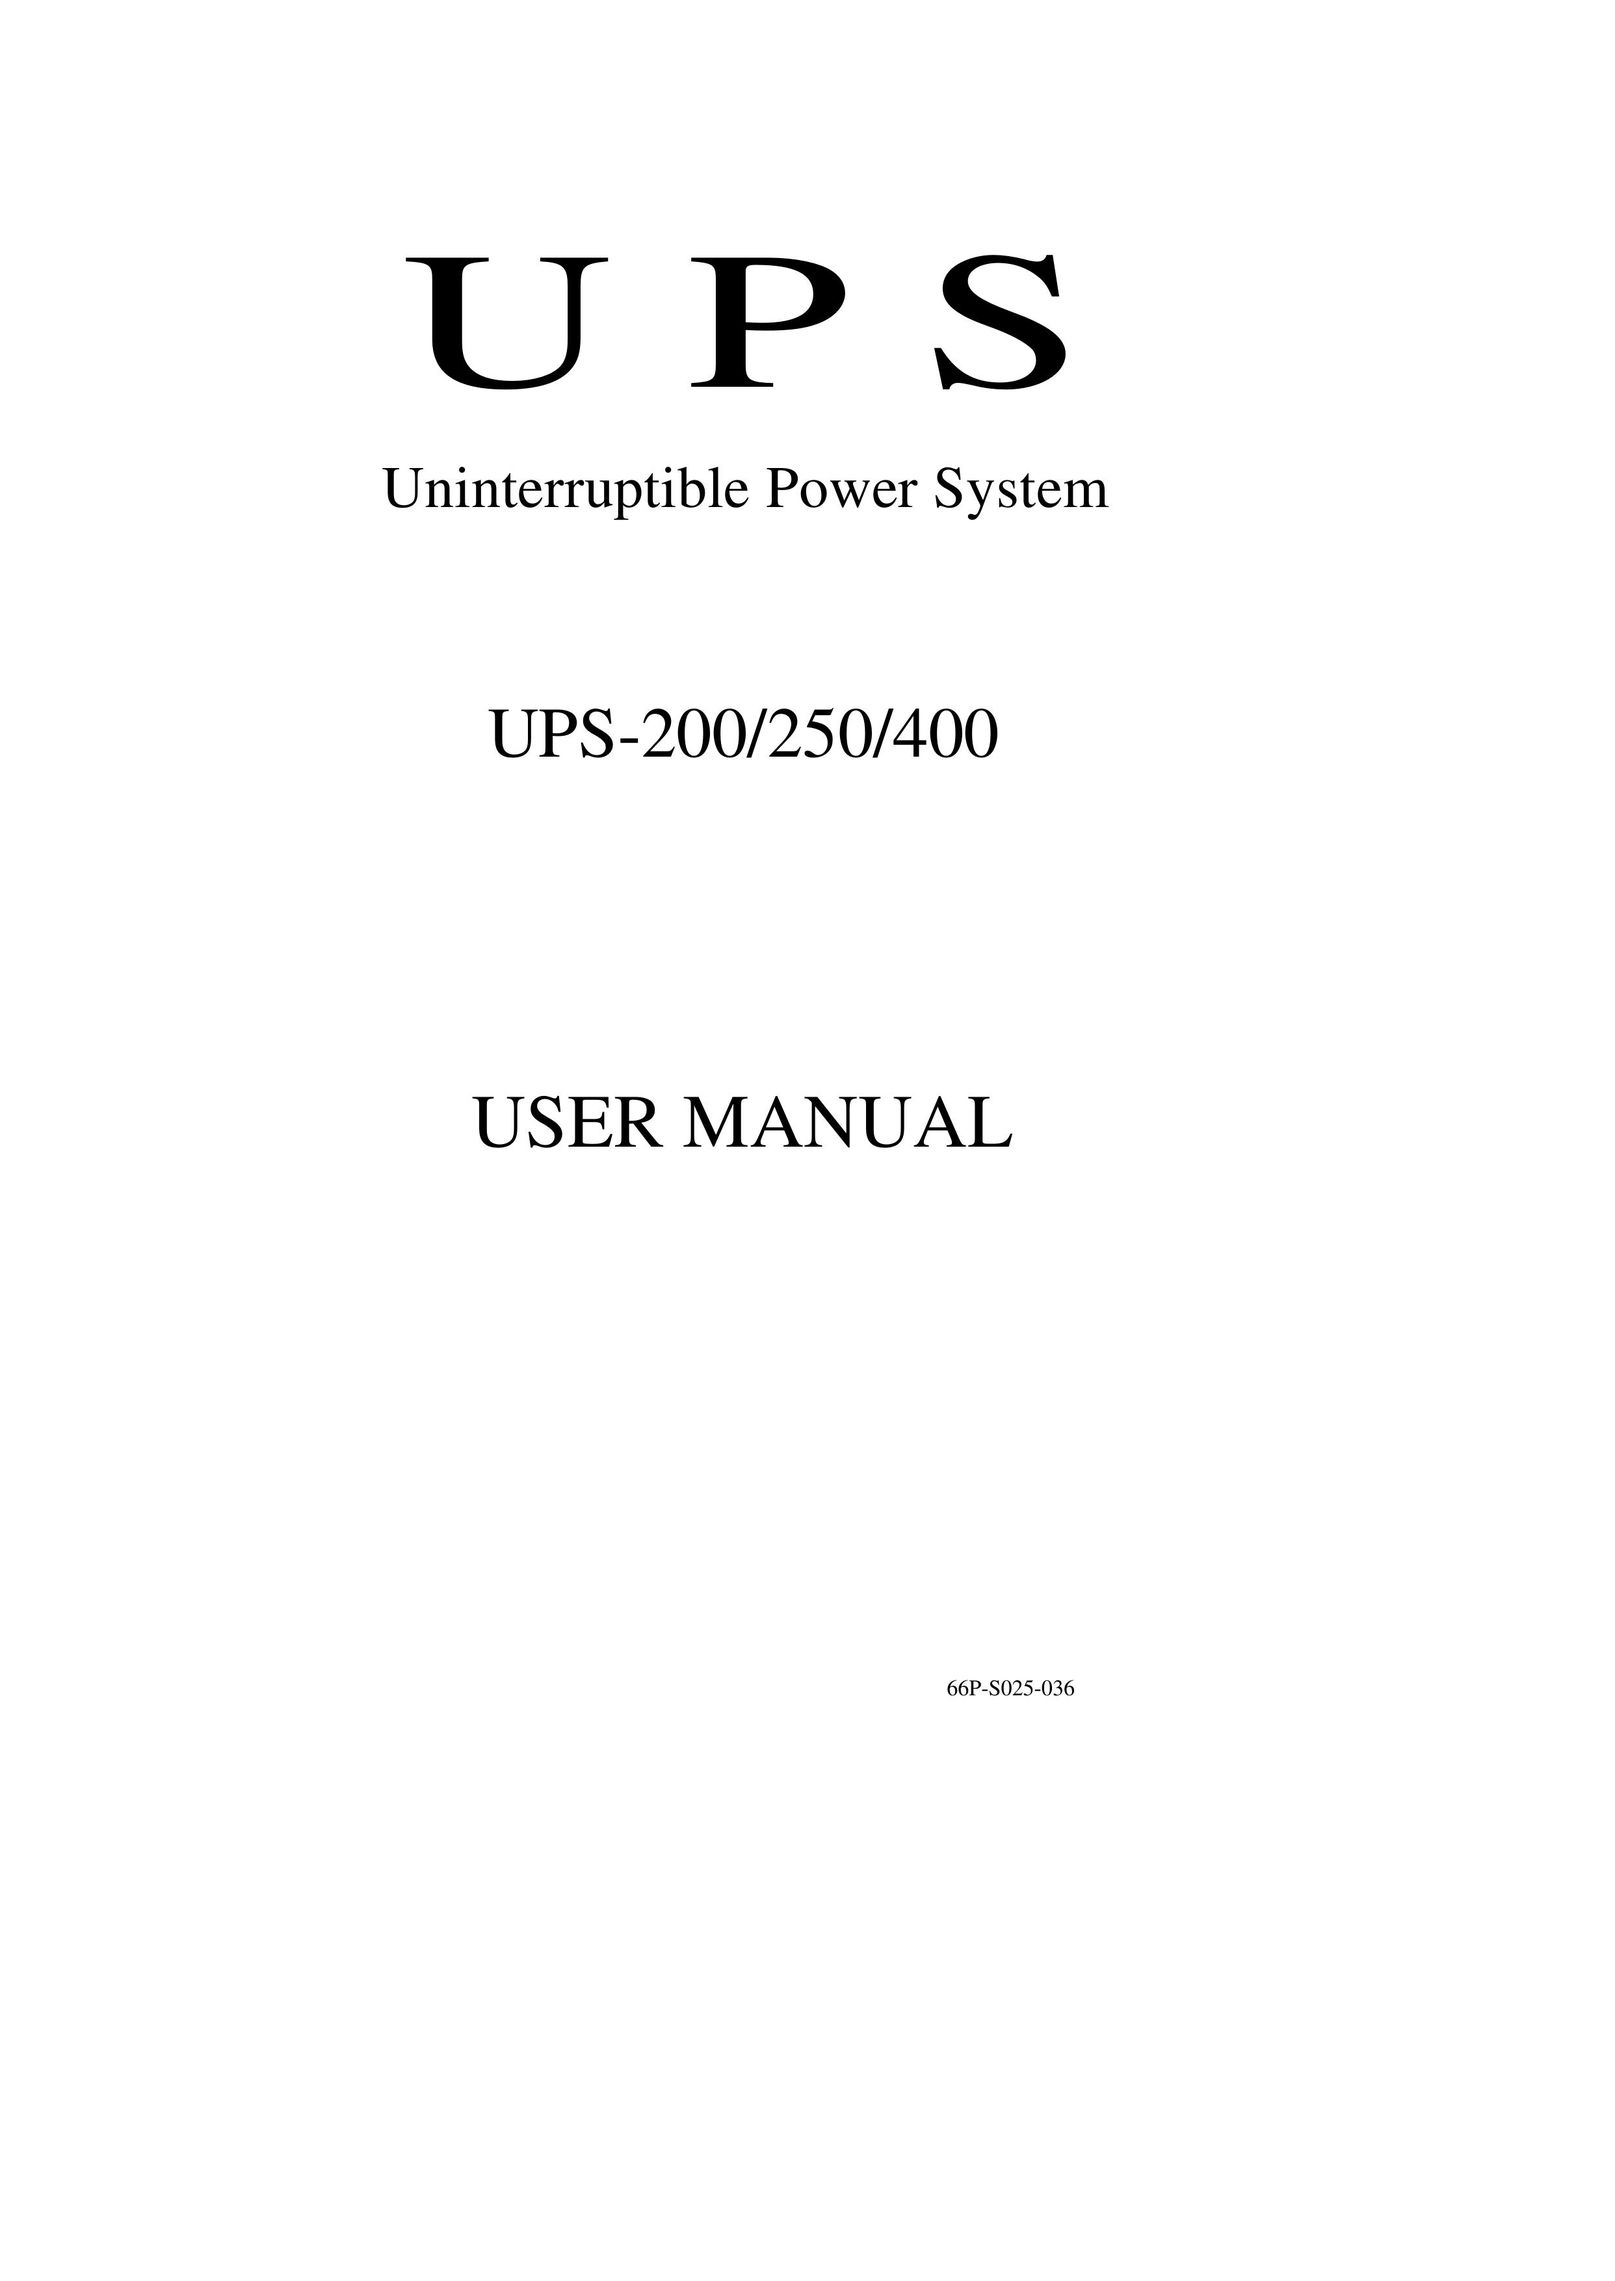 Powercom UPS-200 Network Card User Manual